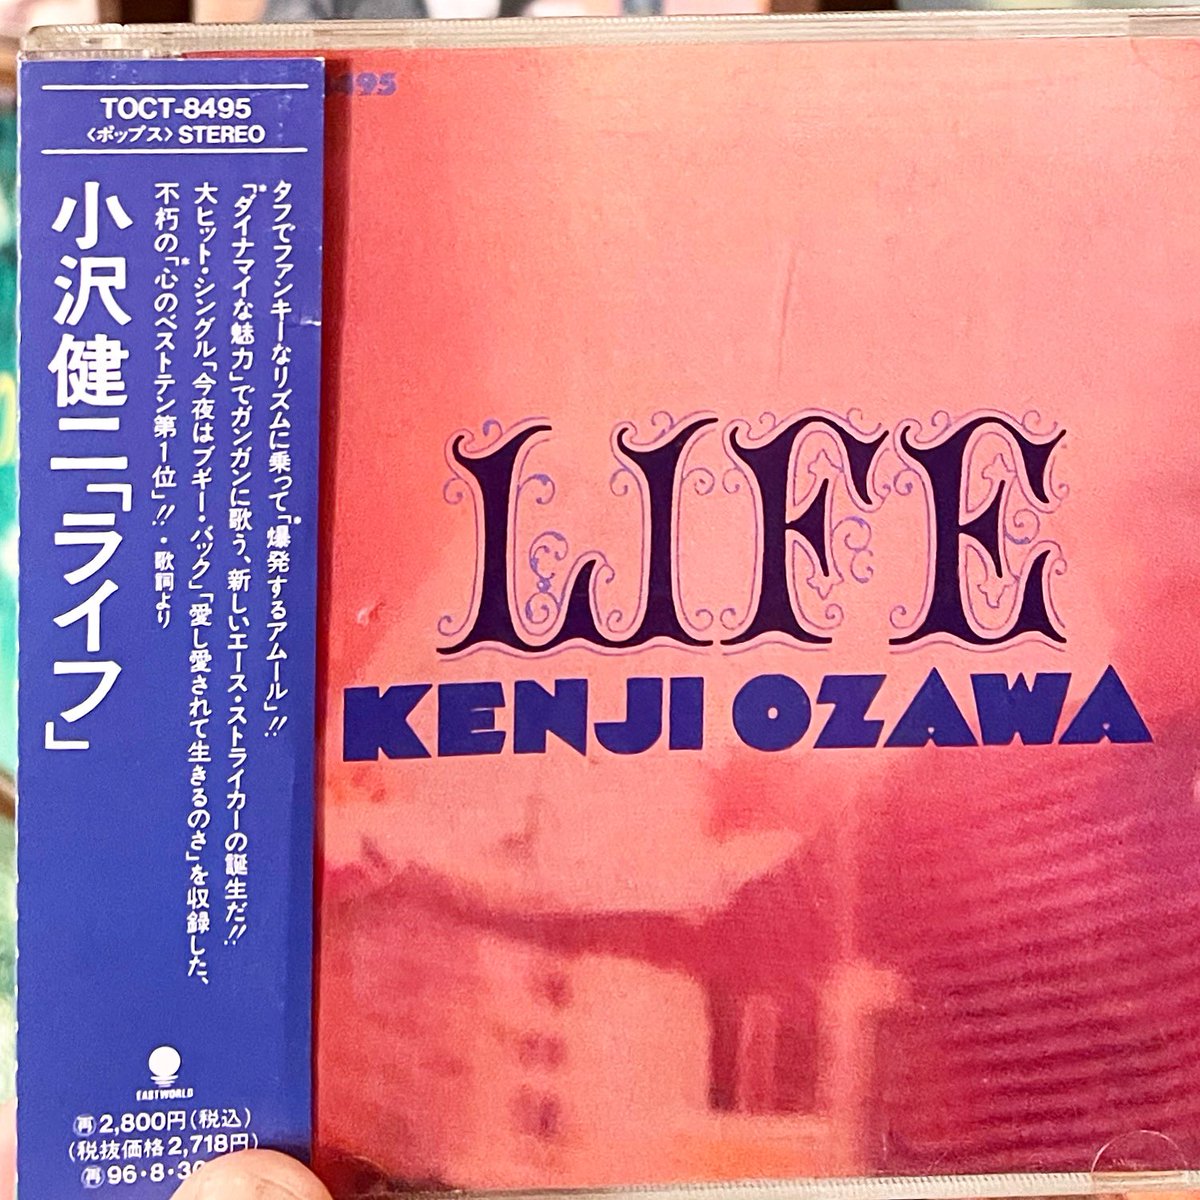 小沢健二 / LIFE CD入荷🎉

不朽の「心のベストテン第一位」！！

1994年リリースの金字塔✨